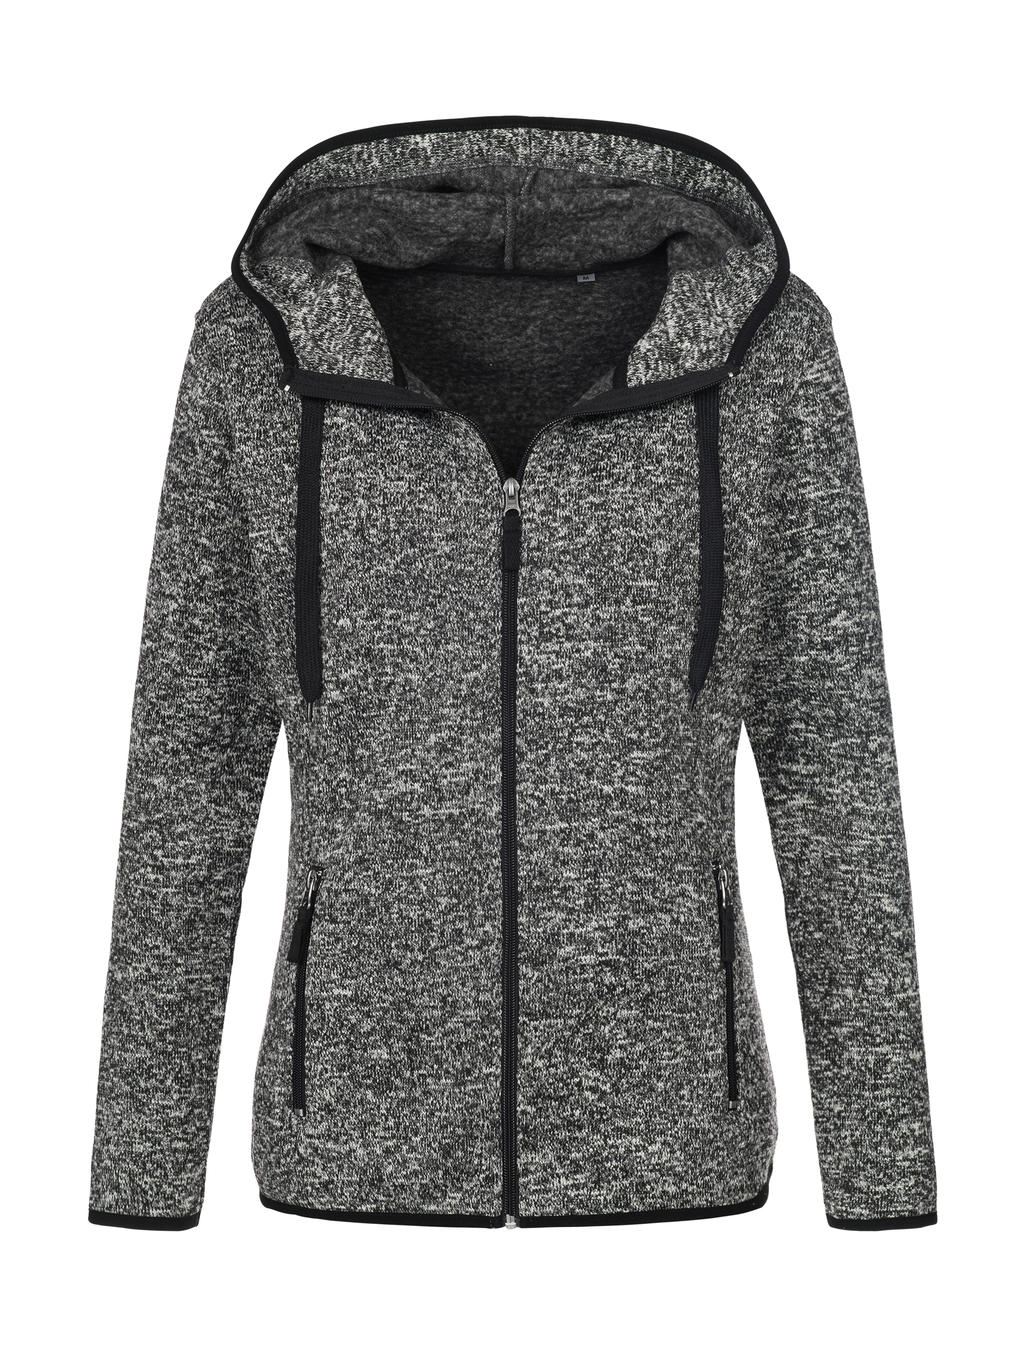  Knit Fleece Jacket Women in Farbe Dark Grey Melange